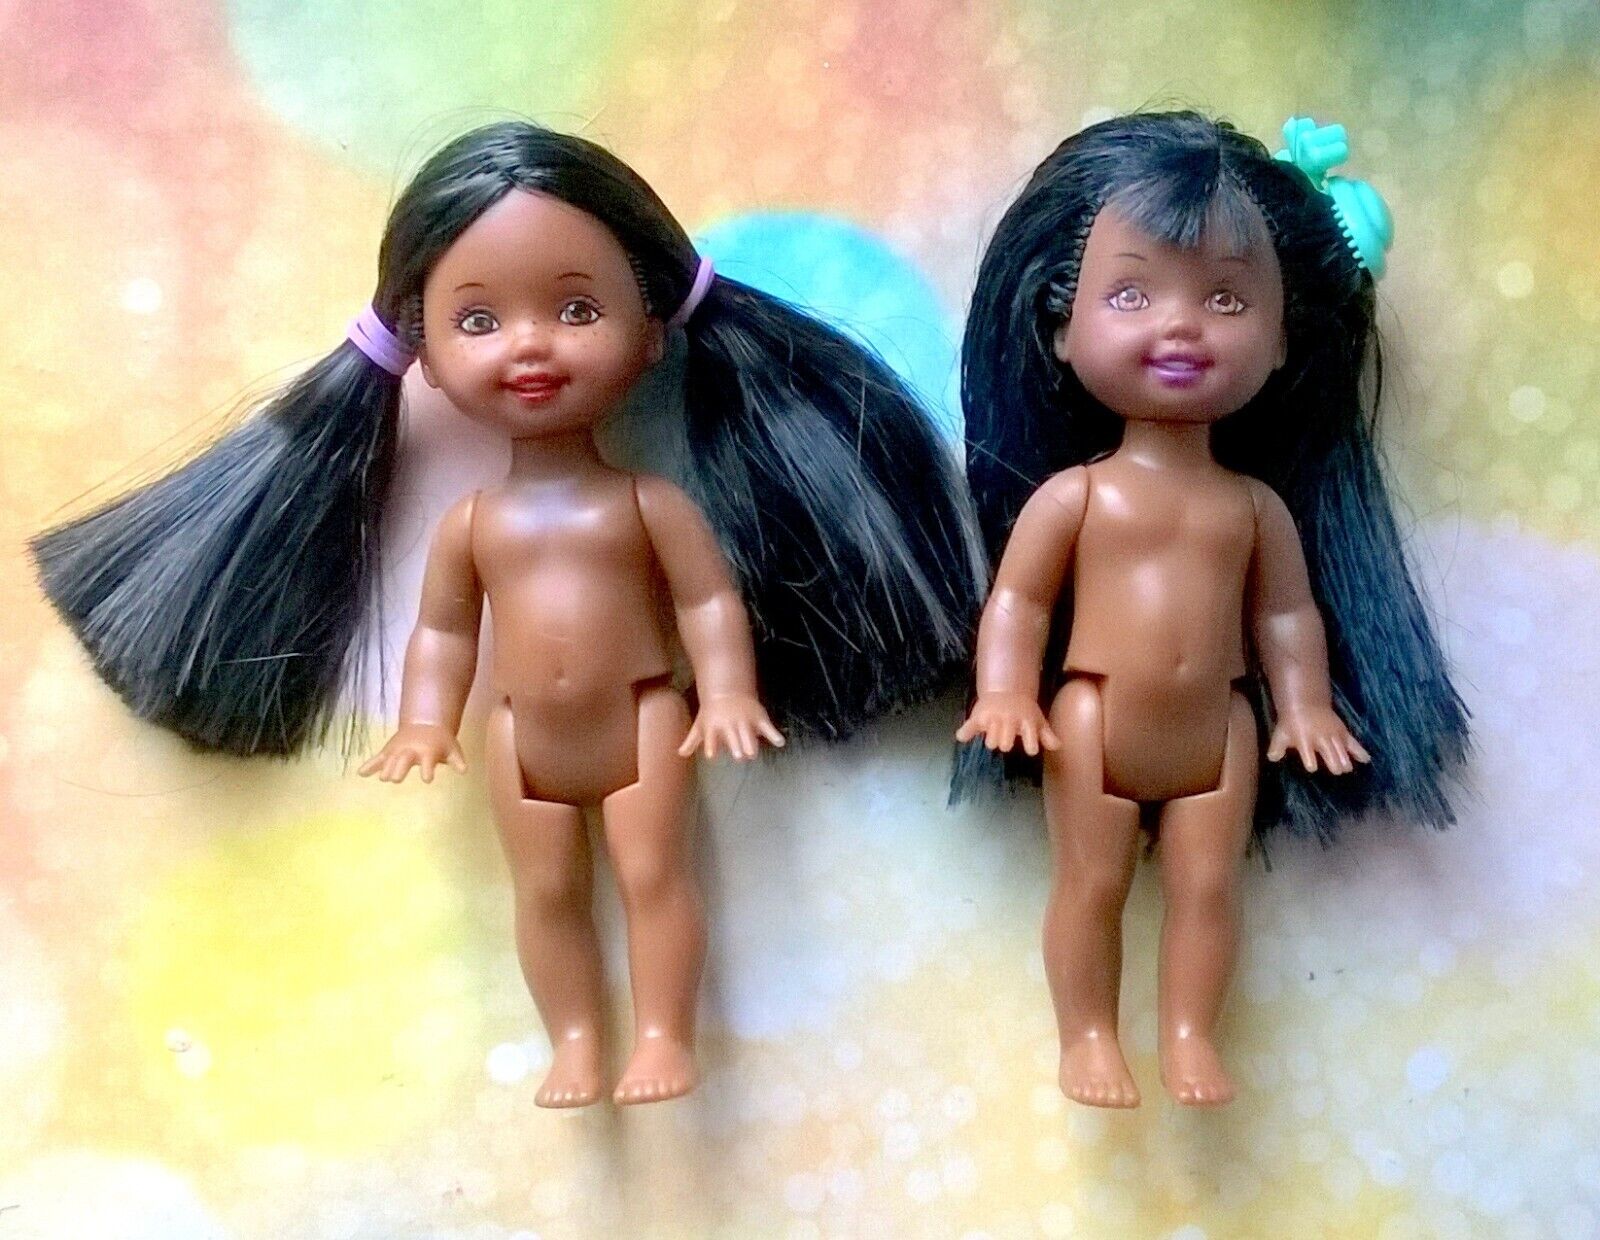 ?Mattel Barbie Kelly nude dolls lot of 2 dolls Lot 4a?